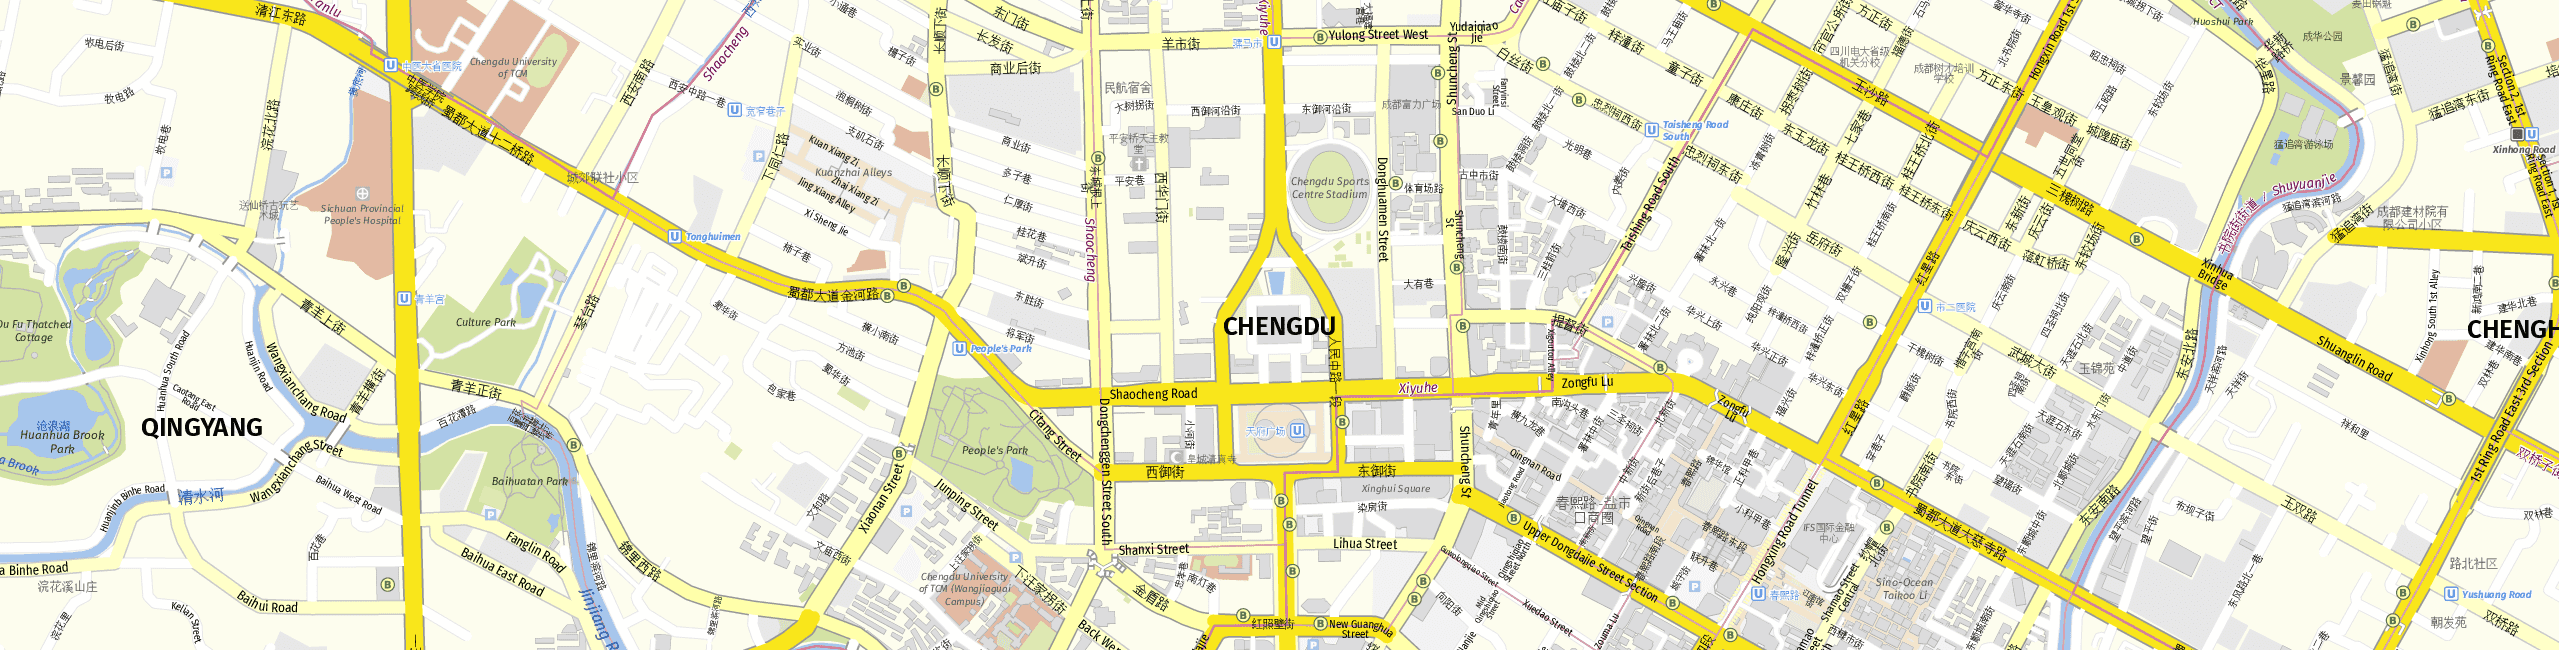 Stadtplan Chengdu zum Downloaden.